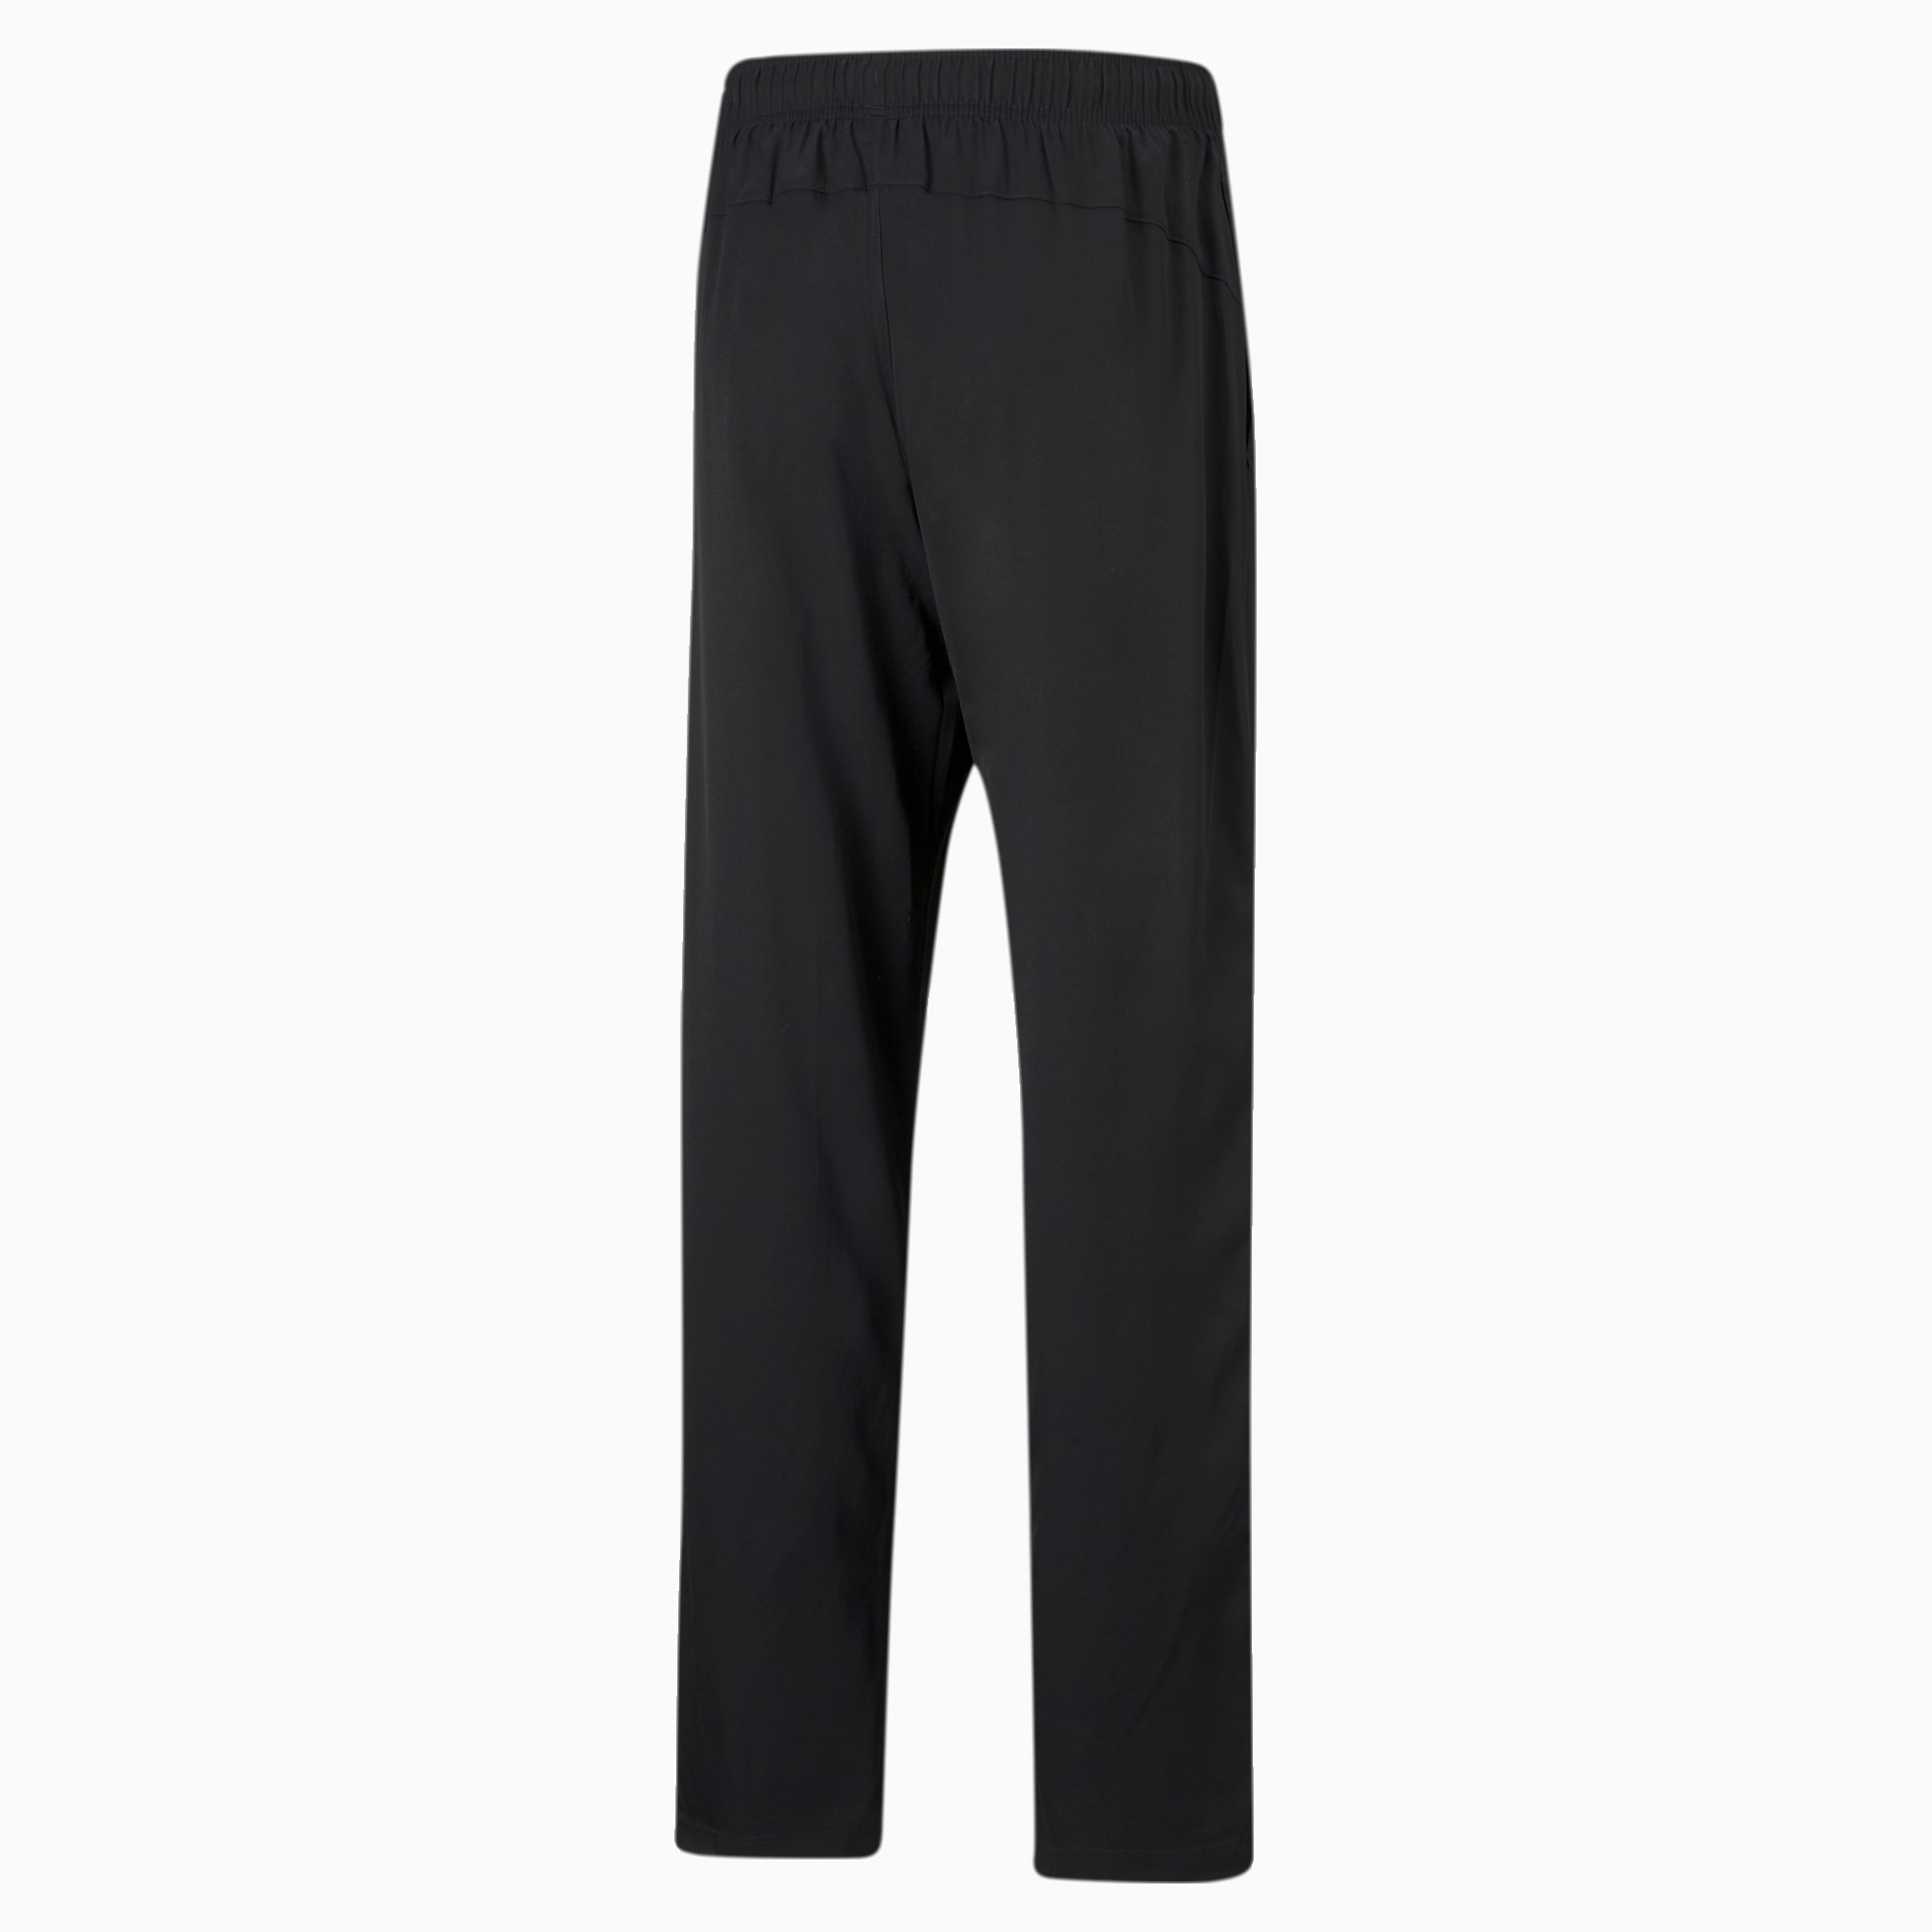 PUMA Active Woven Men's Sweatpants, Black, Size XS, Clothing